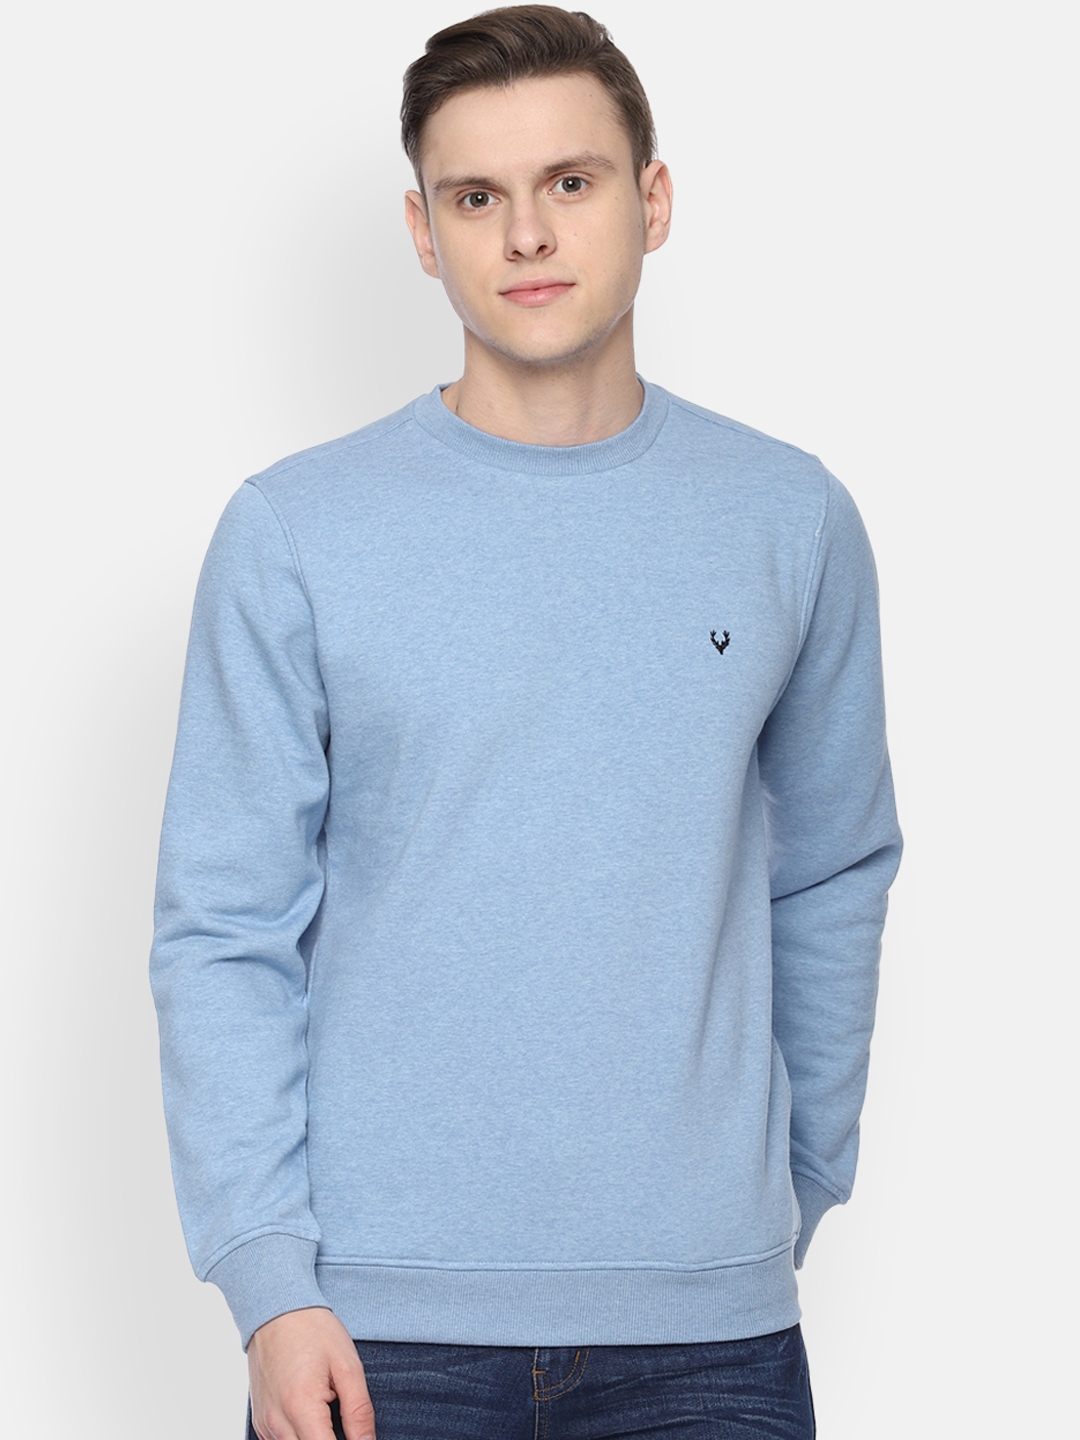 Buy Allen Solly Men Blue Solid Sweatshirt - Sweatshirts for Men ...